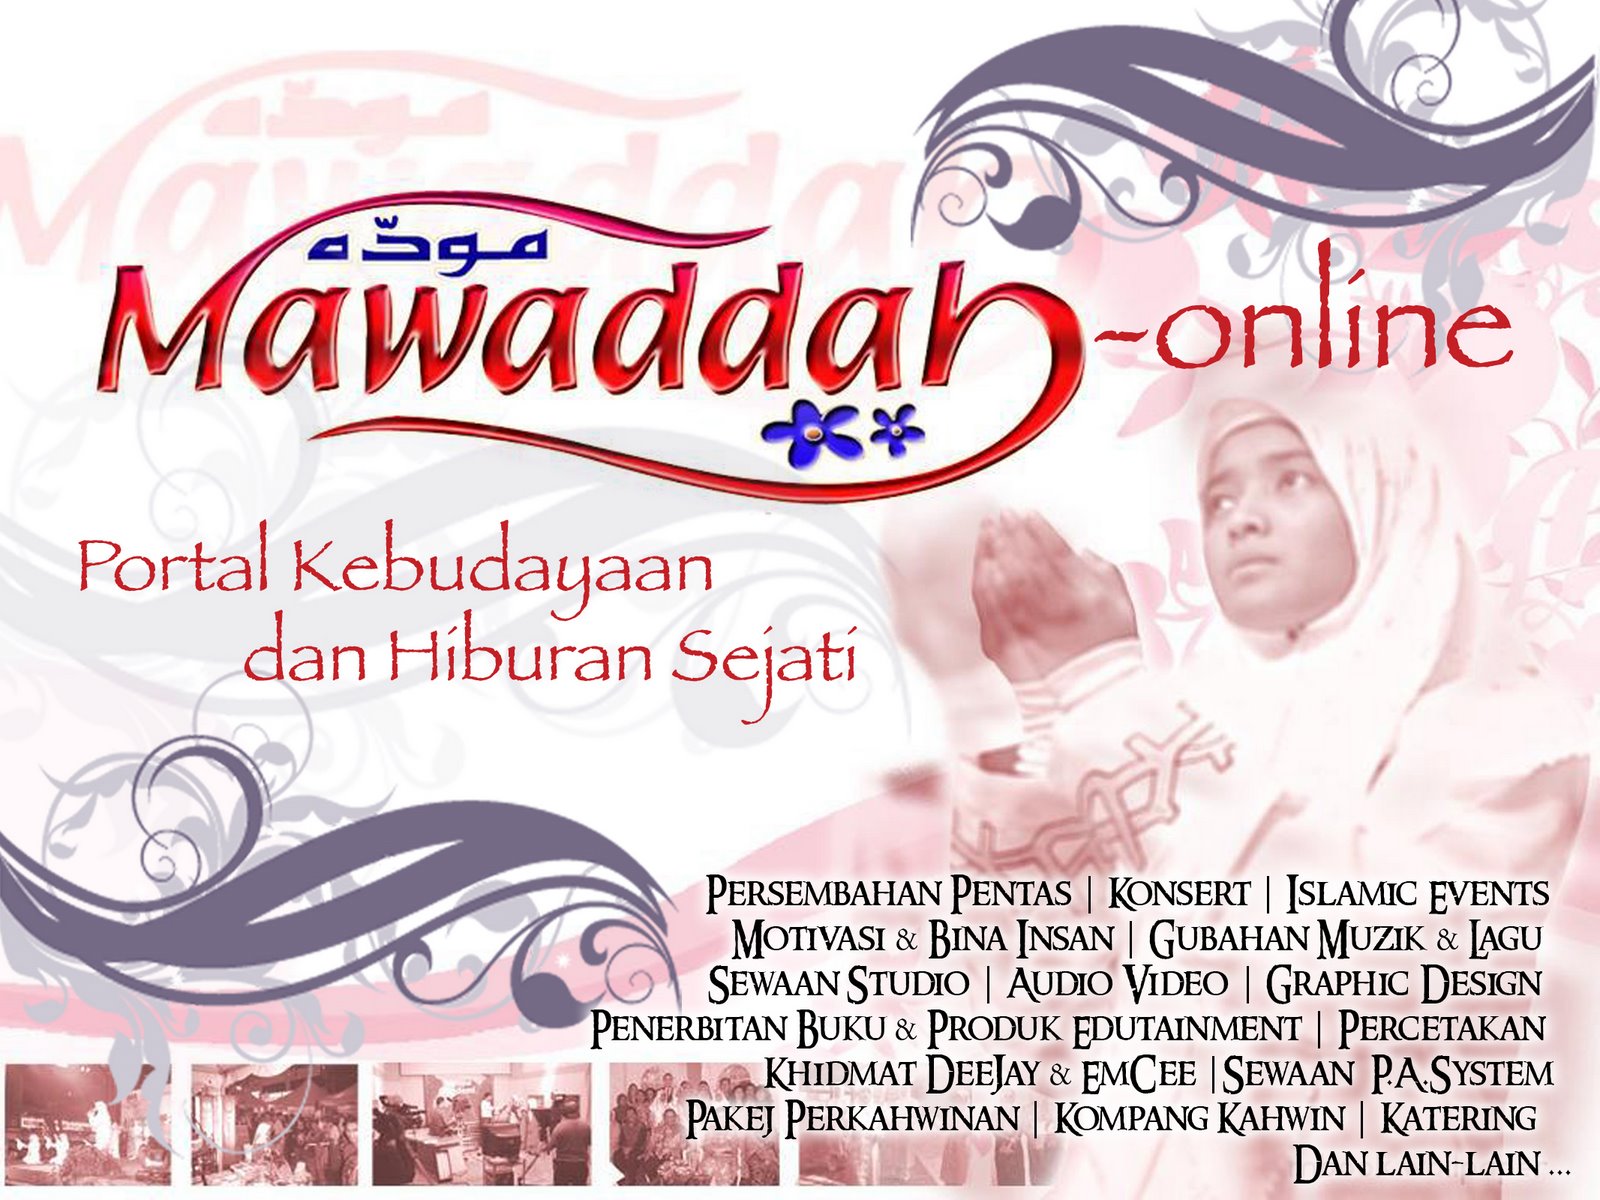 Mawaddah Online